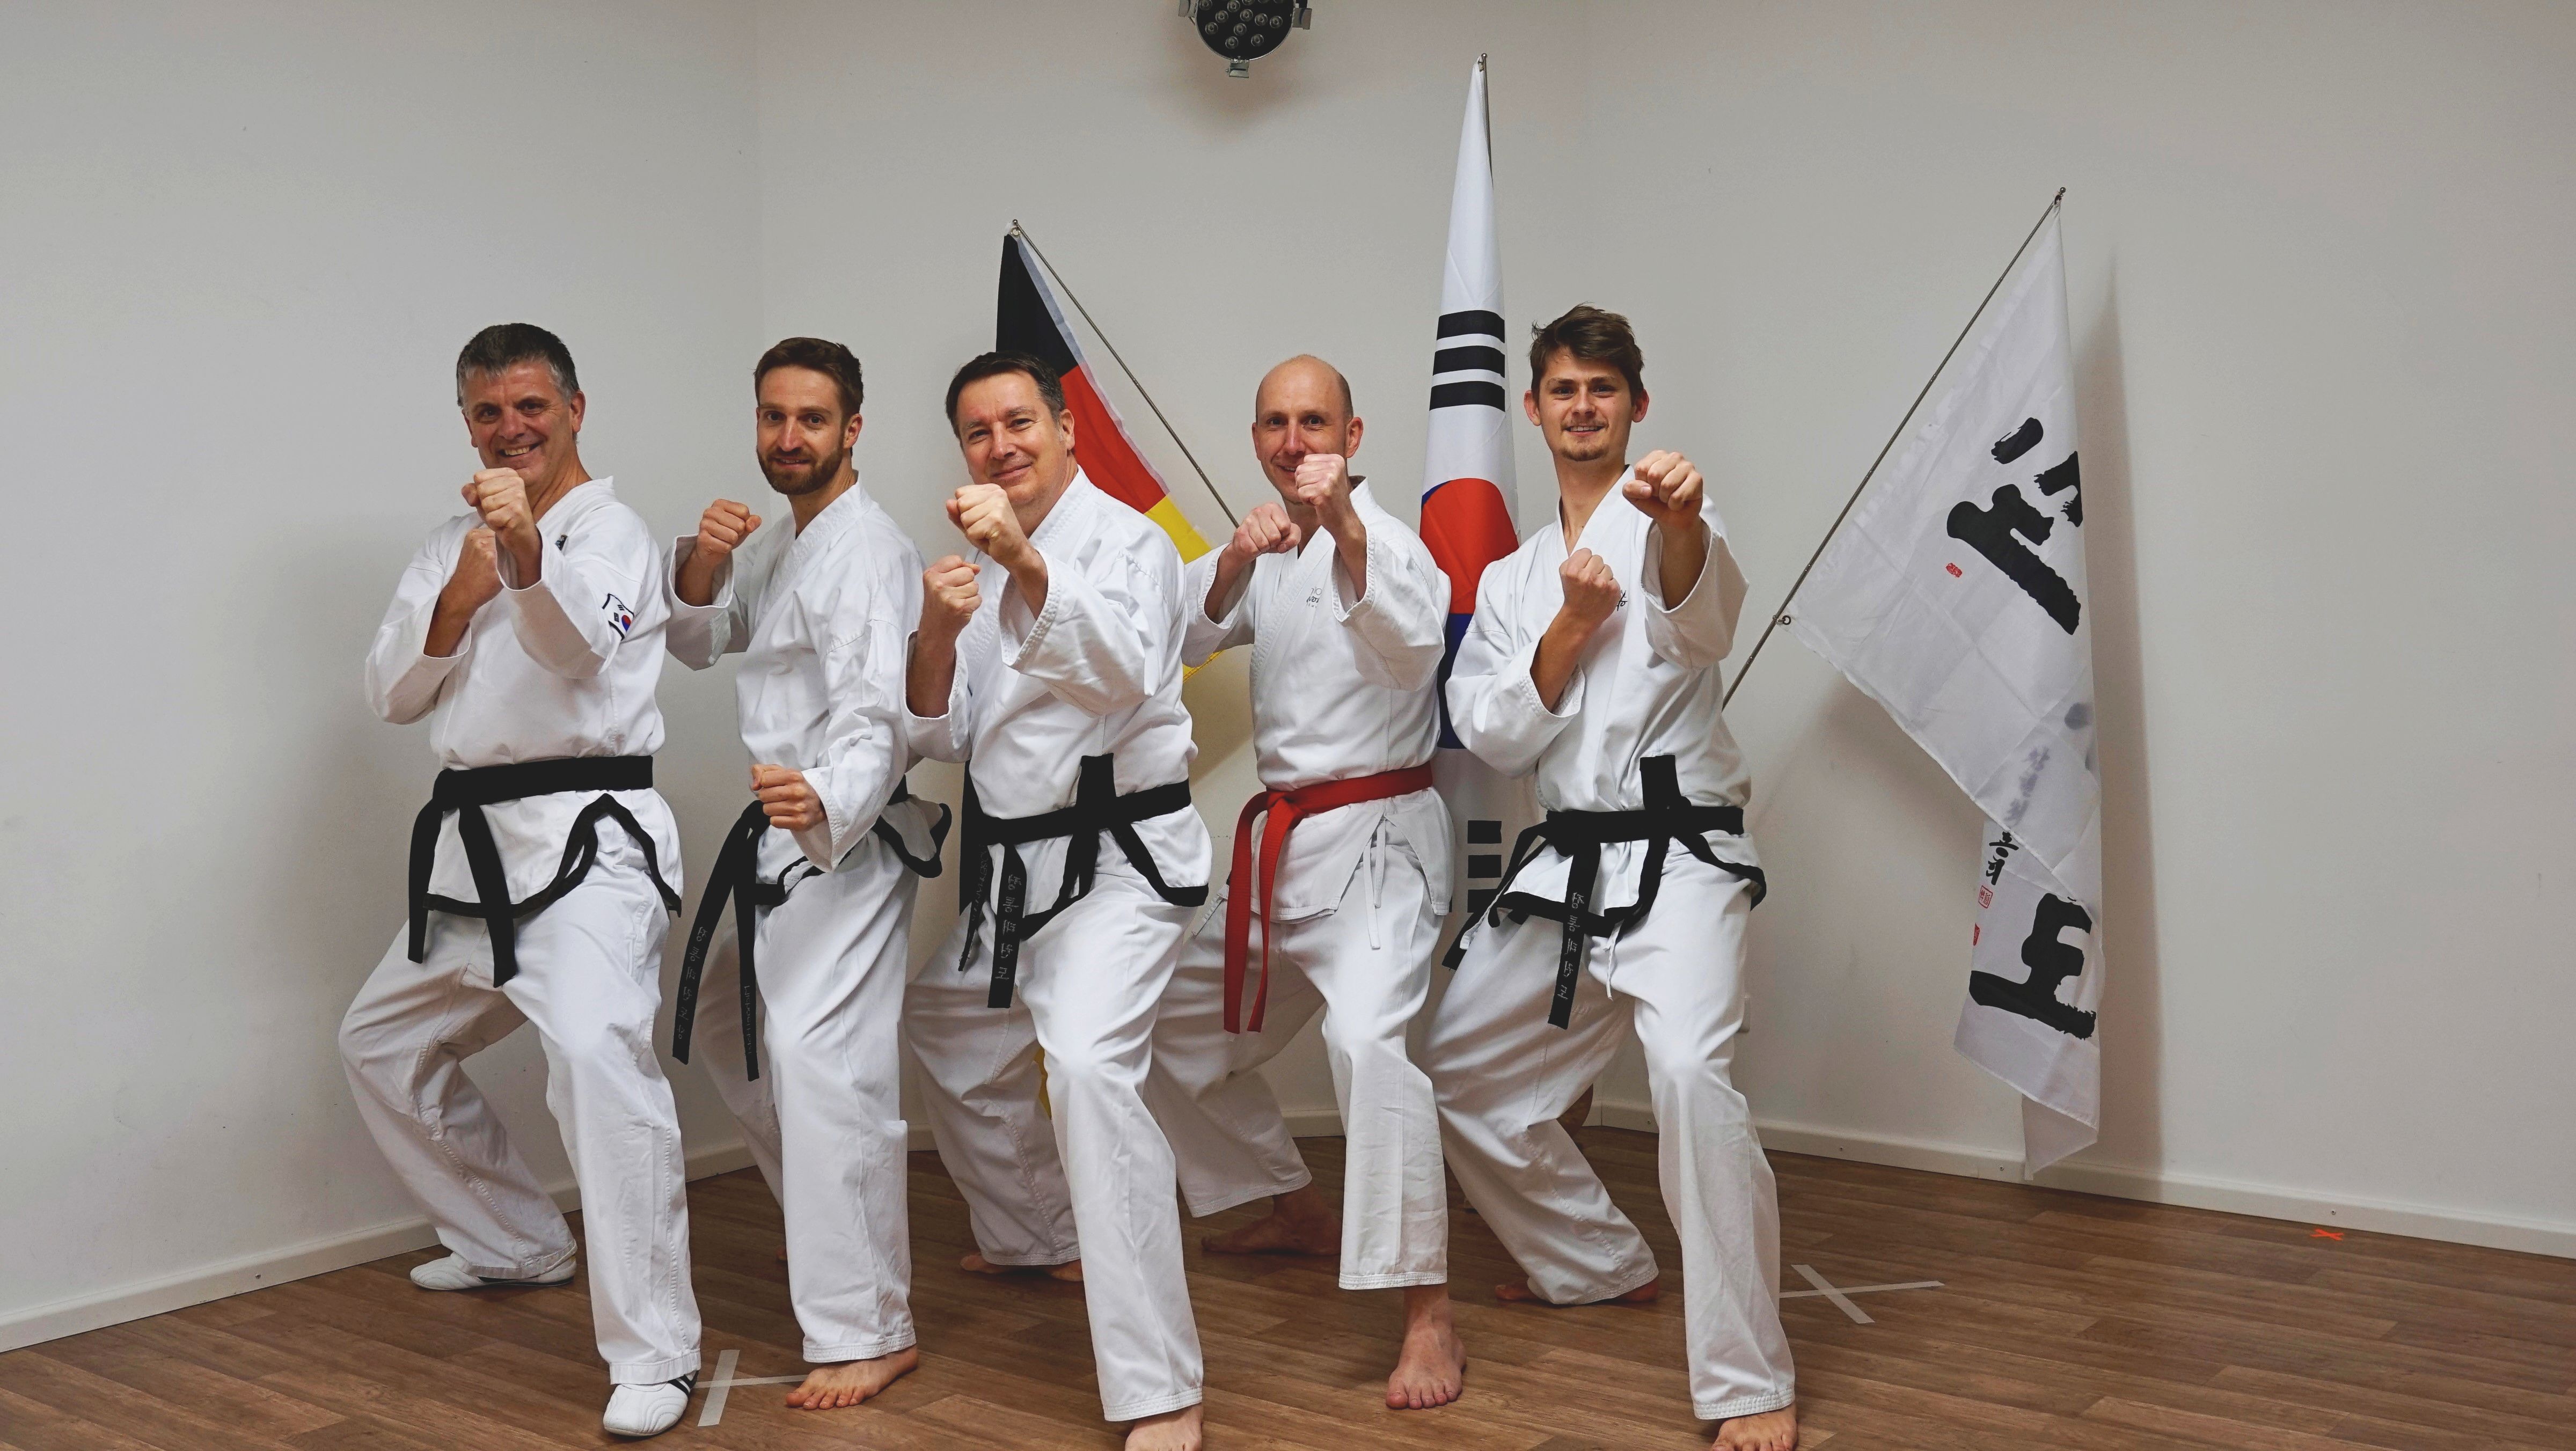 Traditional Taekwondo Dojang - auf dem Bild die Gründer